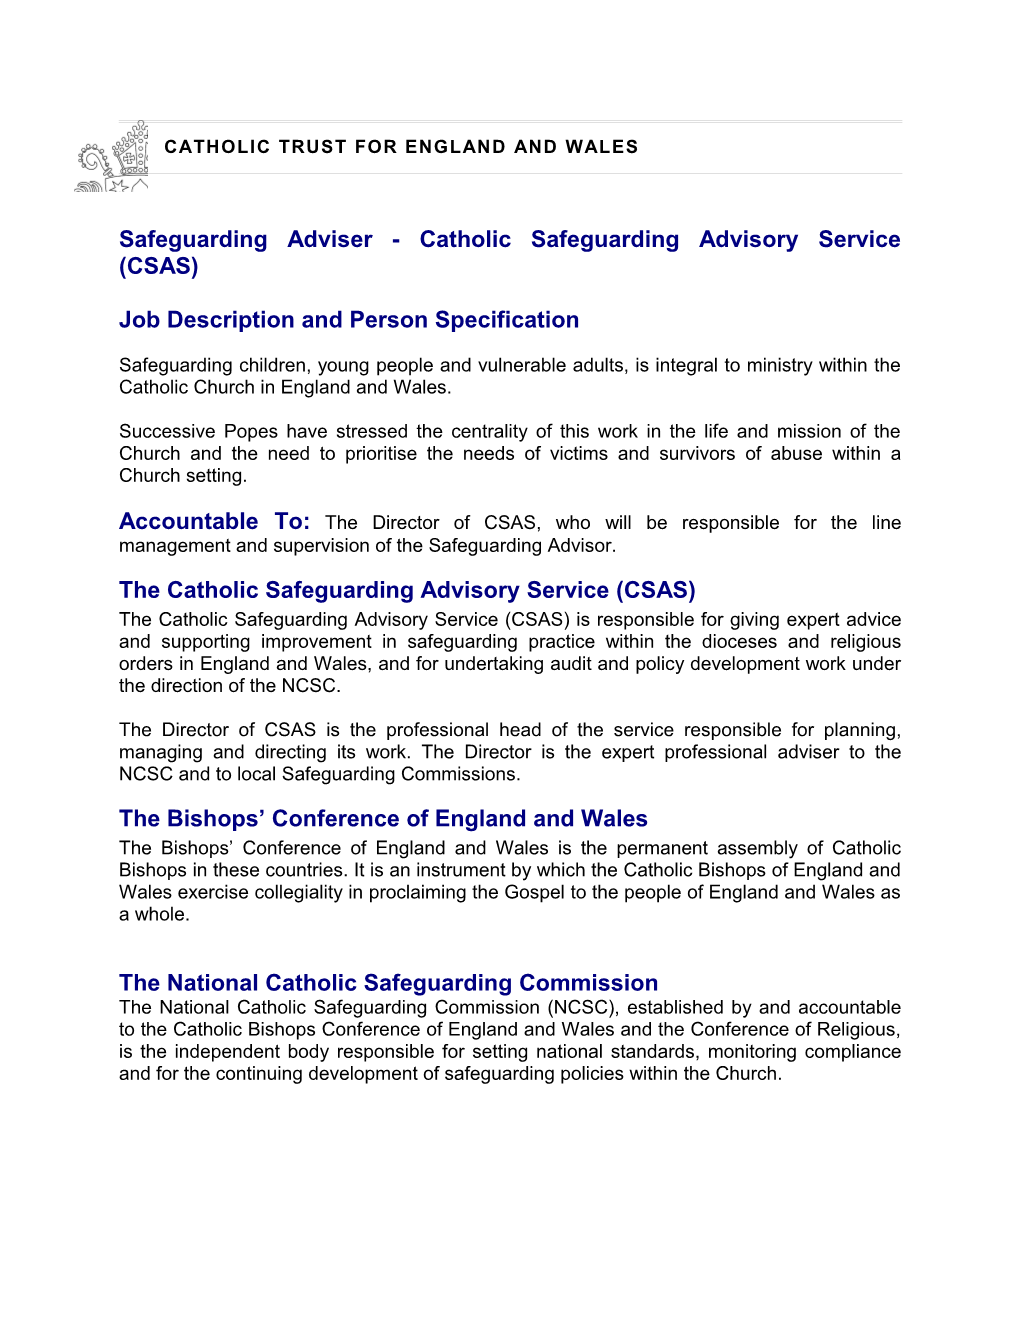 National Catholic Safeguarding Advisory Service